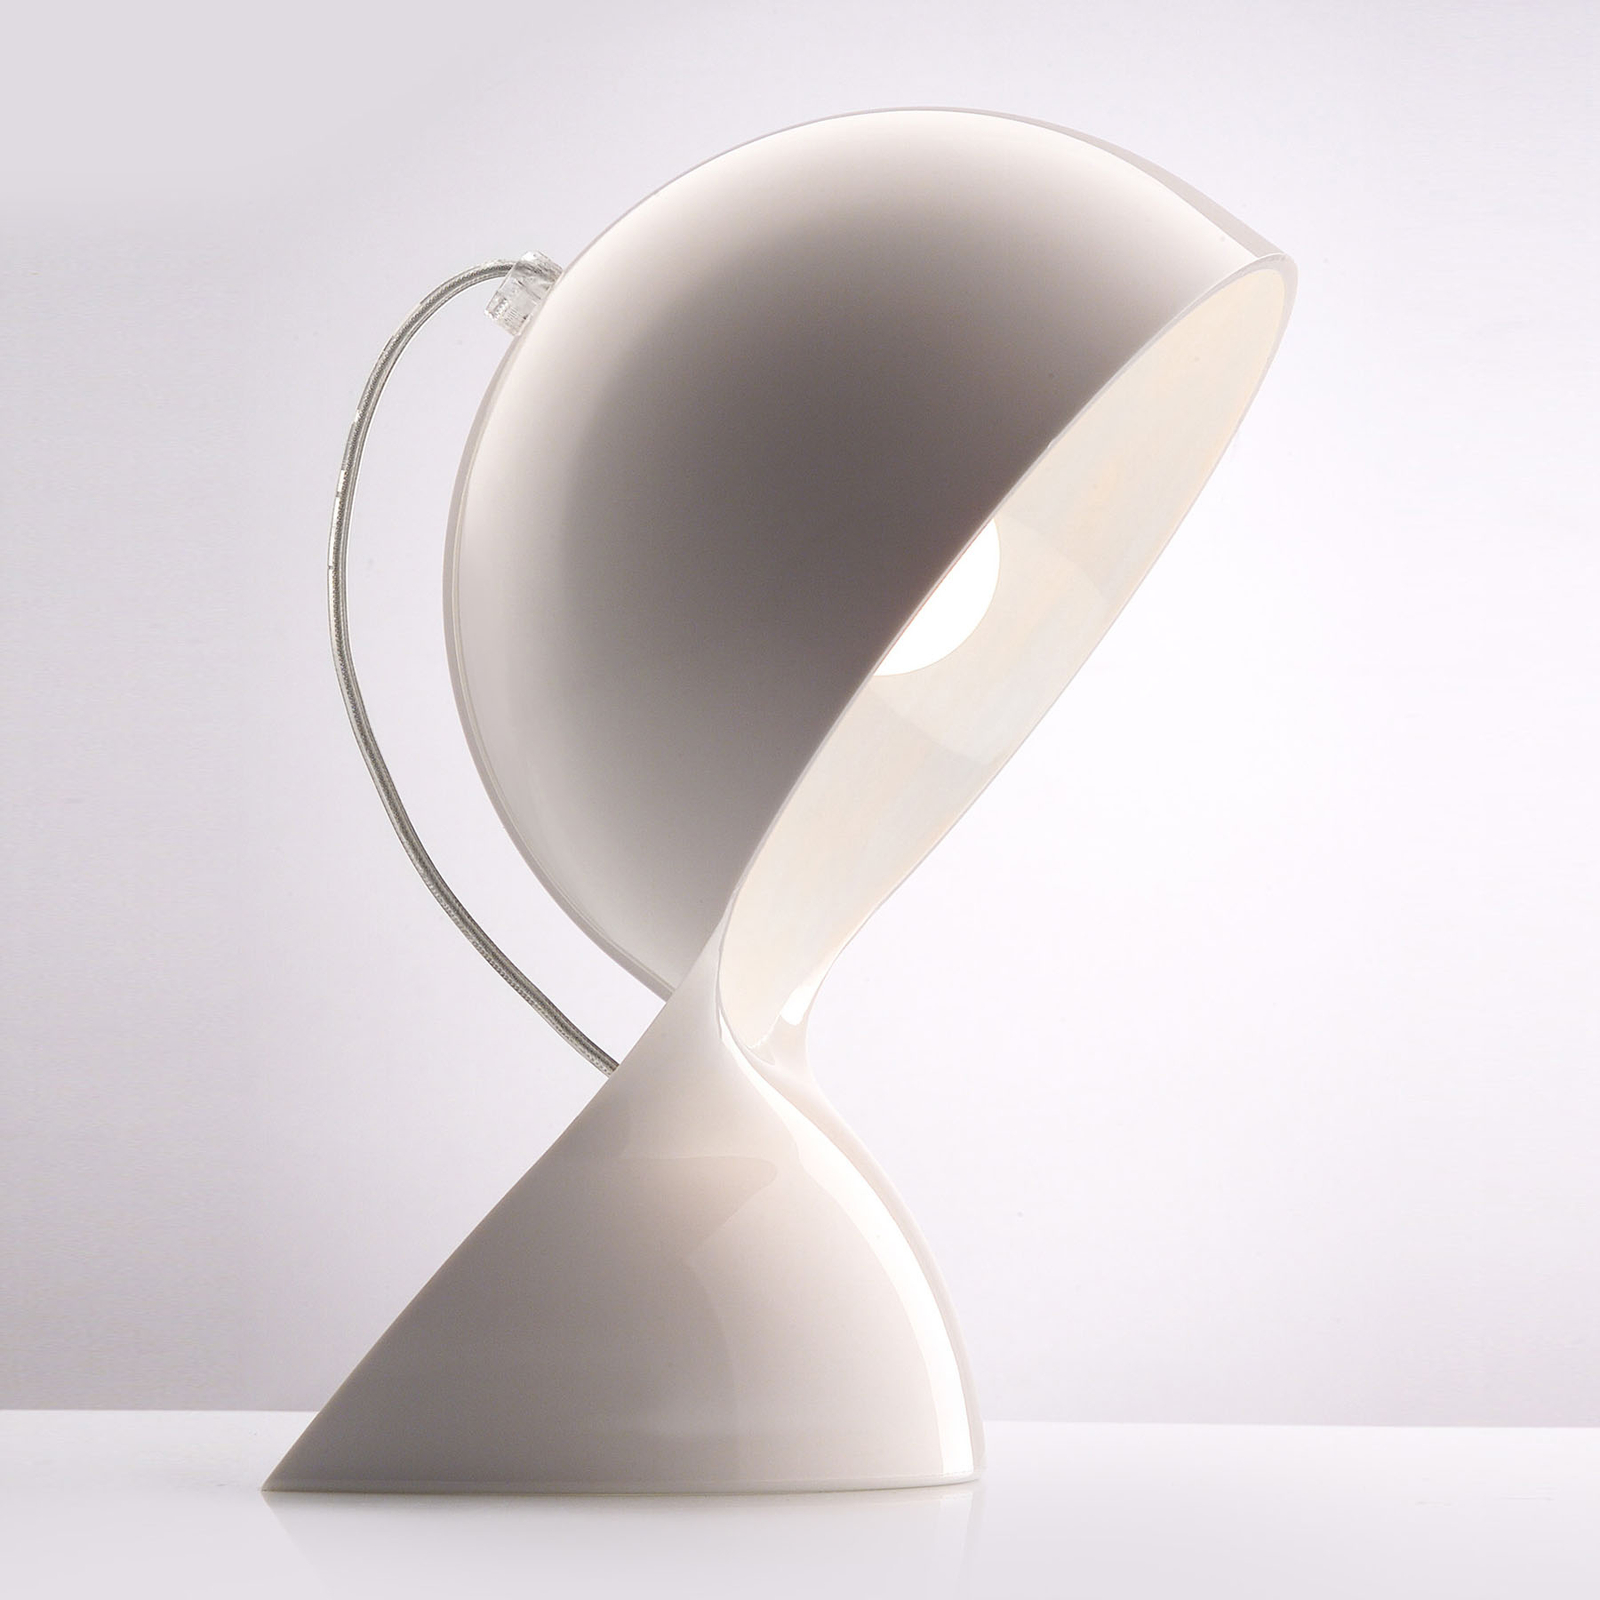 Artemide Dalù designer tafellamp in wit